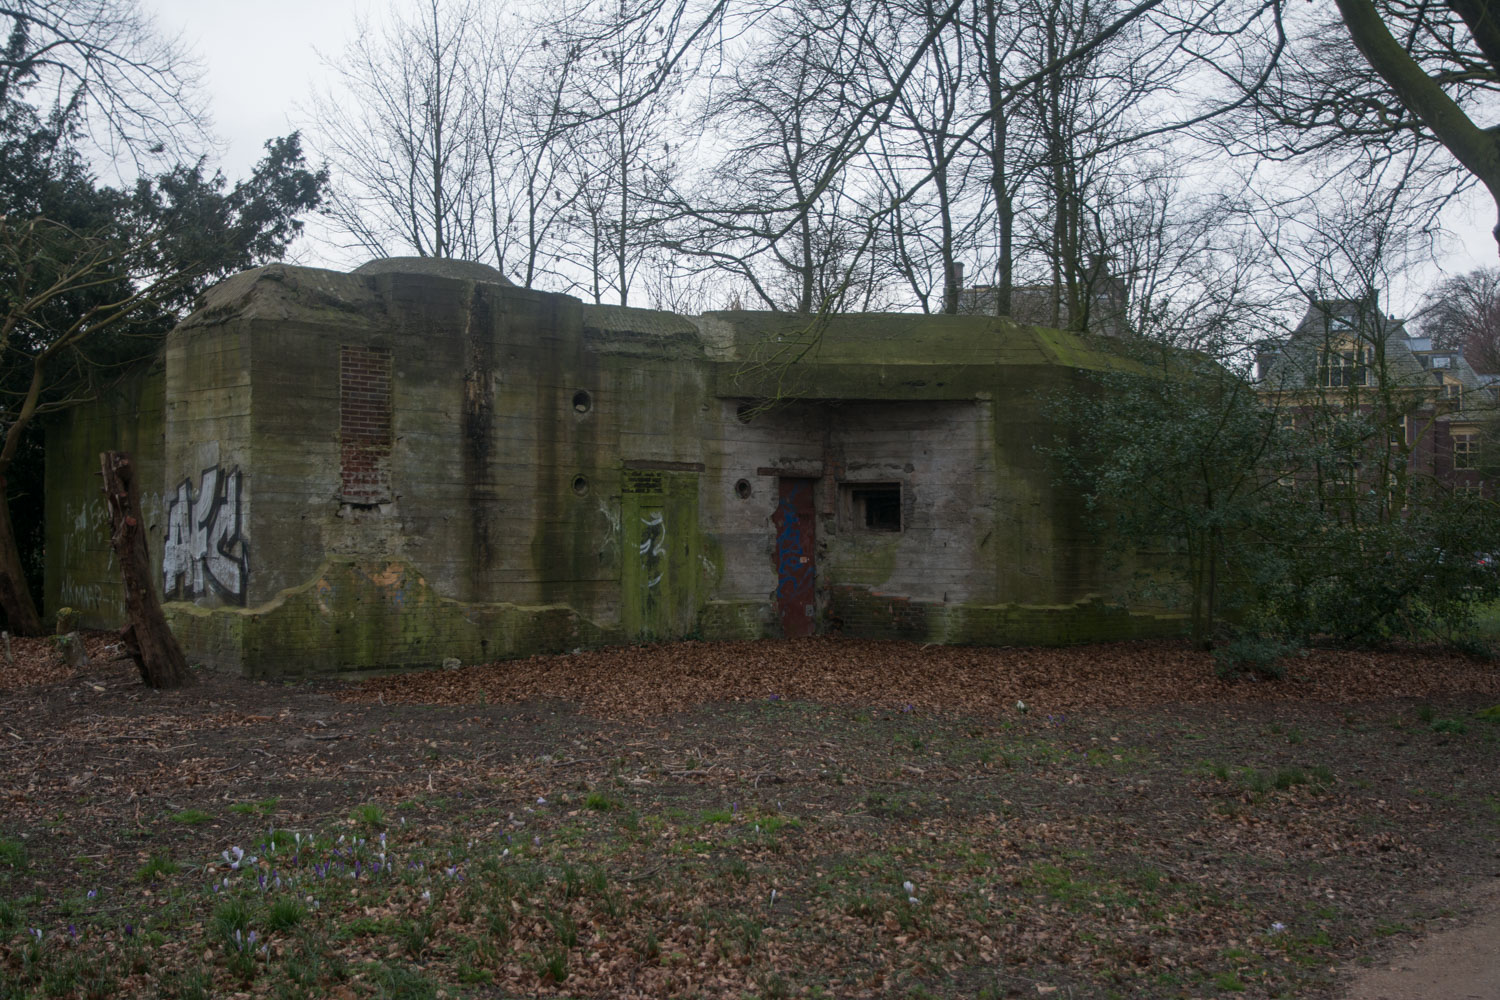 65. Bunker